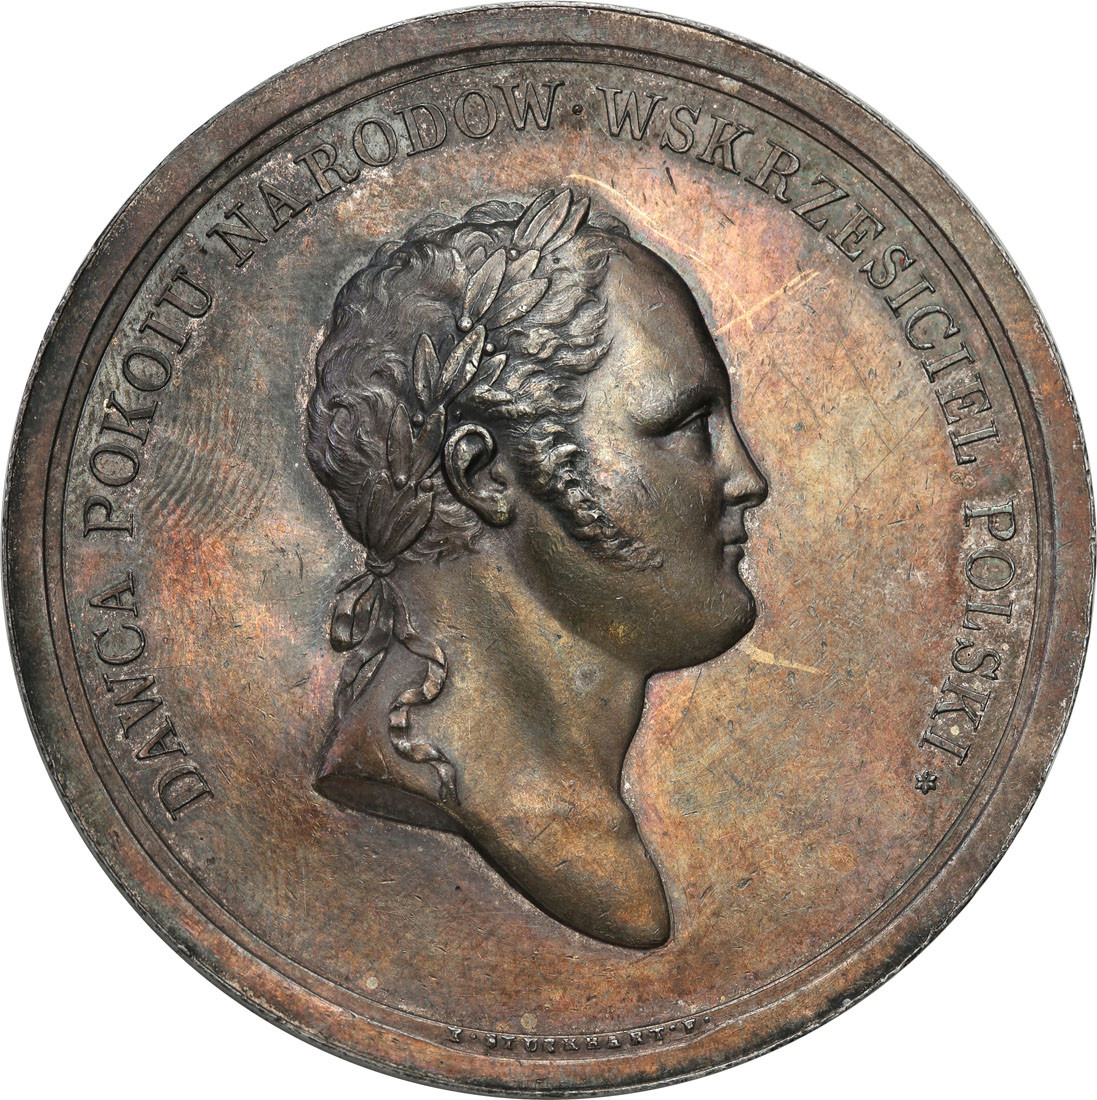 Królestwo Polskie.  Aleksander I. Medal 1817 Huta Aleksandra w Białogonach, SREBRO - RZADKOŚĆ